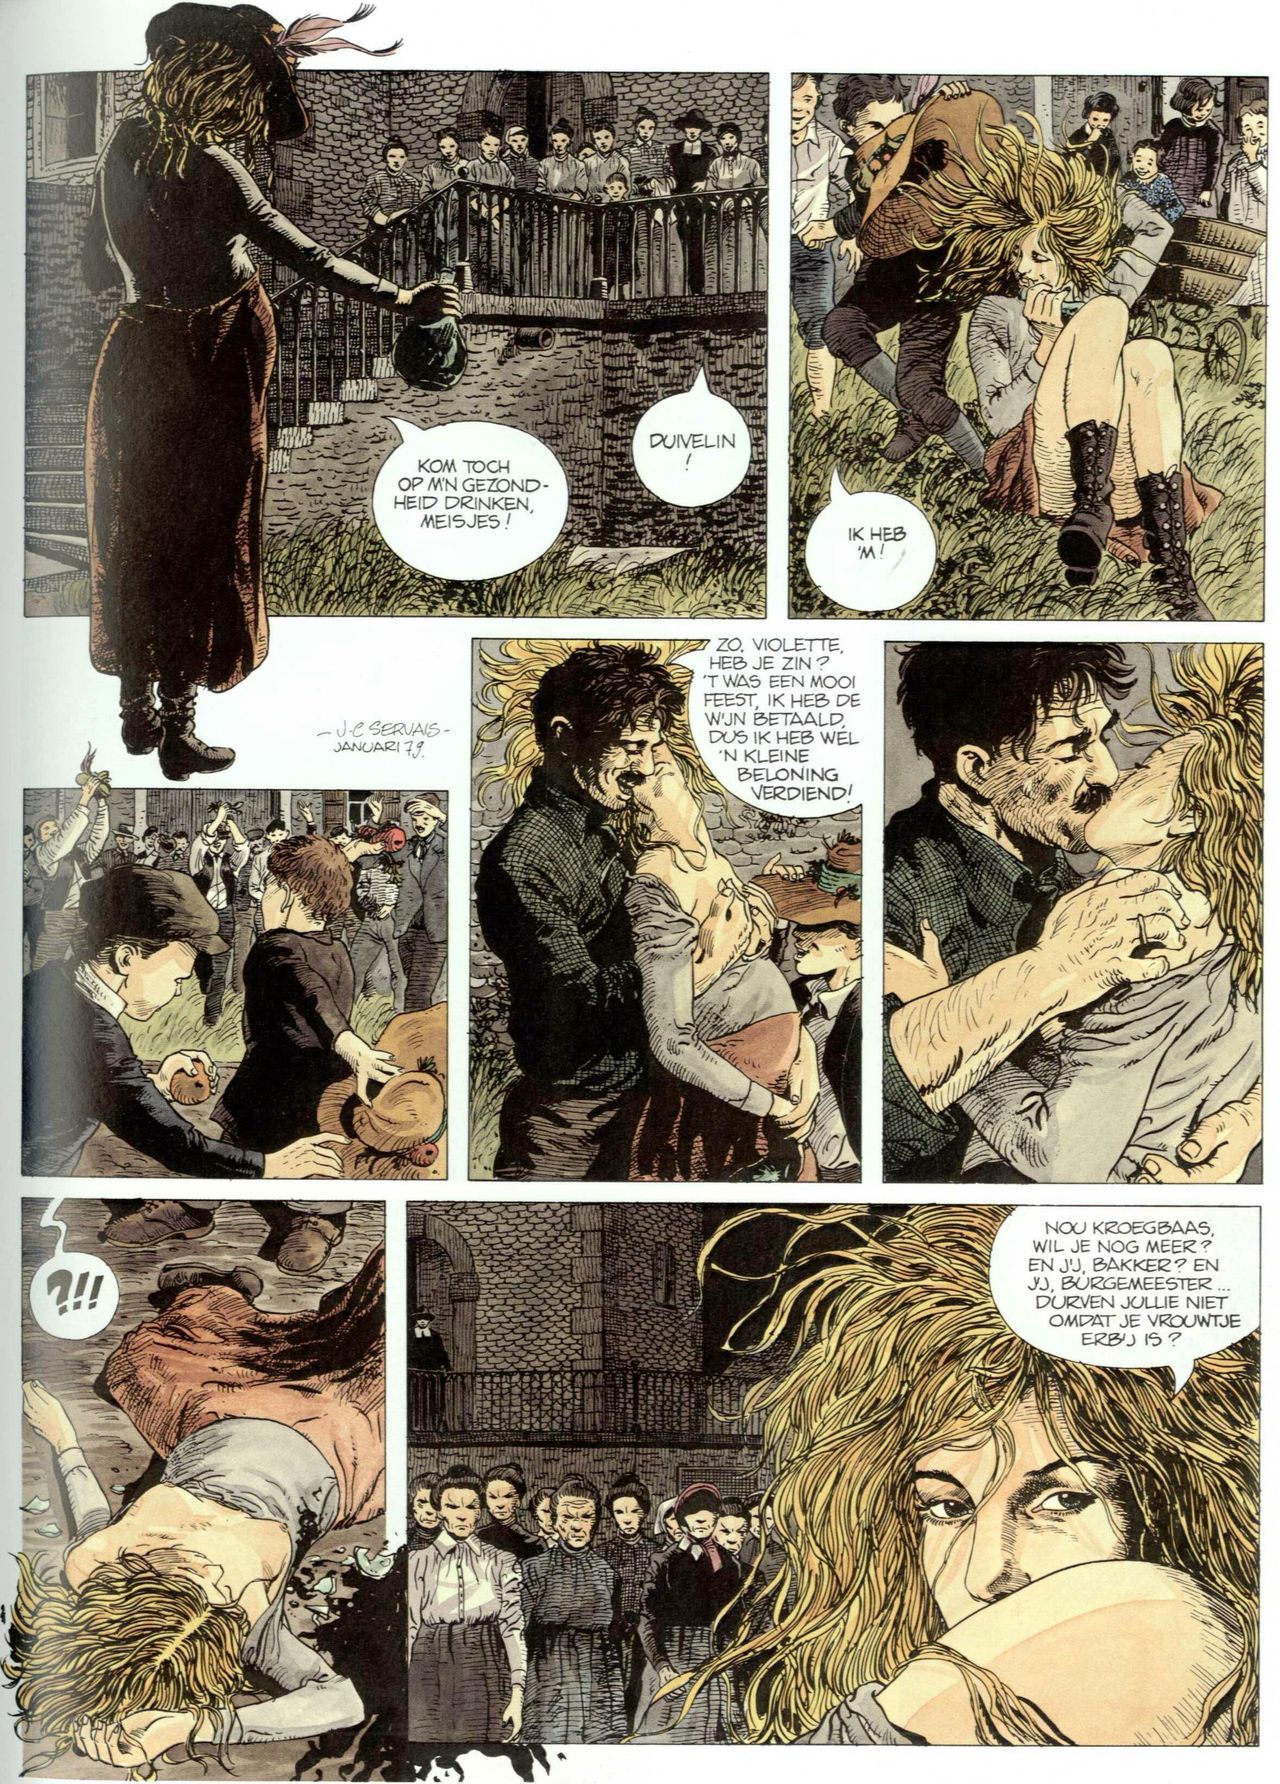 Bosliefje - 01 - Julien (Dutch) Franstalige strips die op deze site staan, hier is de Nederlandse uitgave! 12